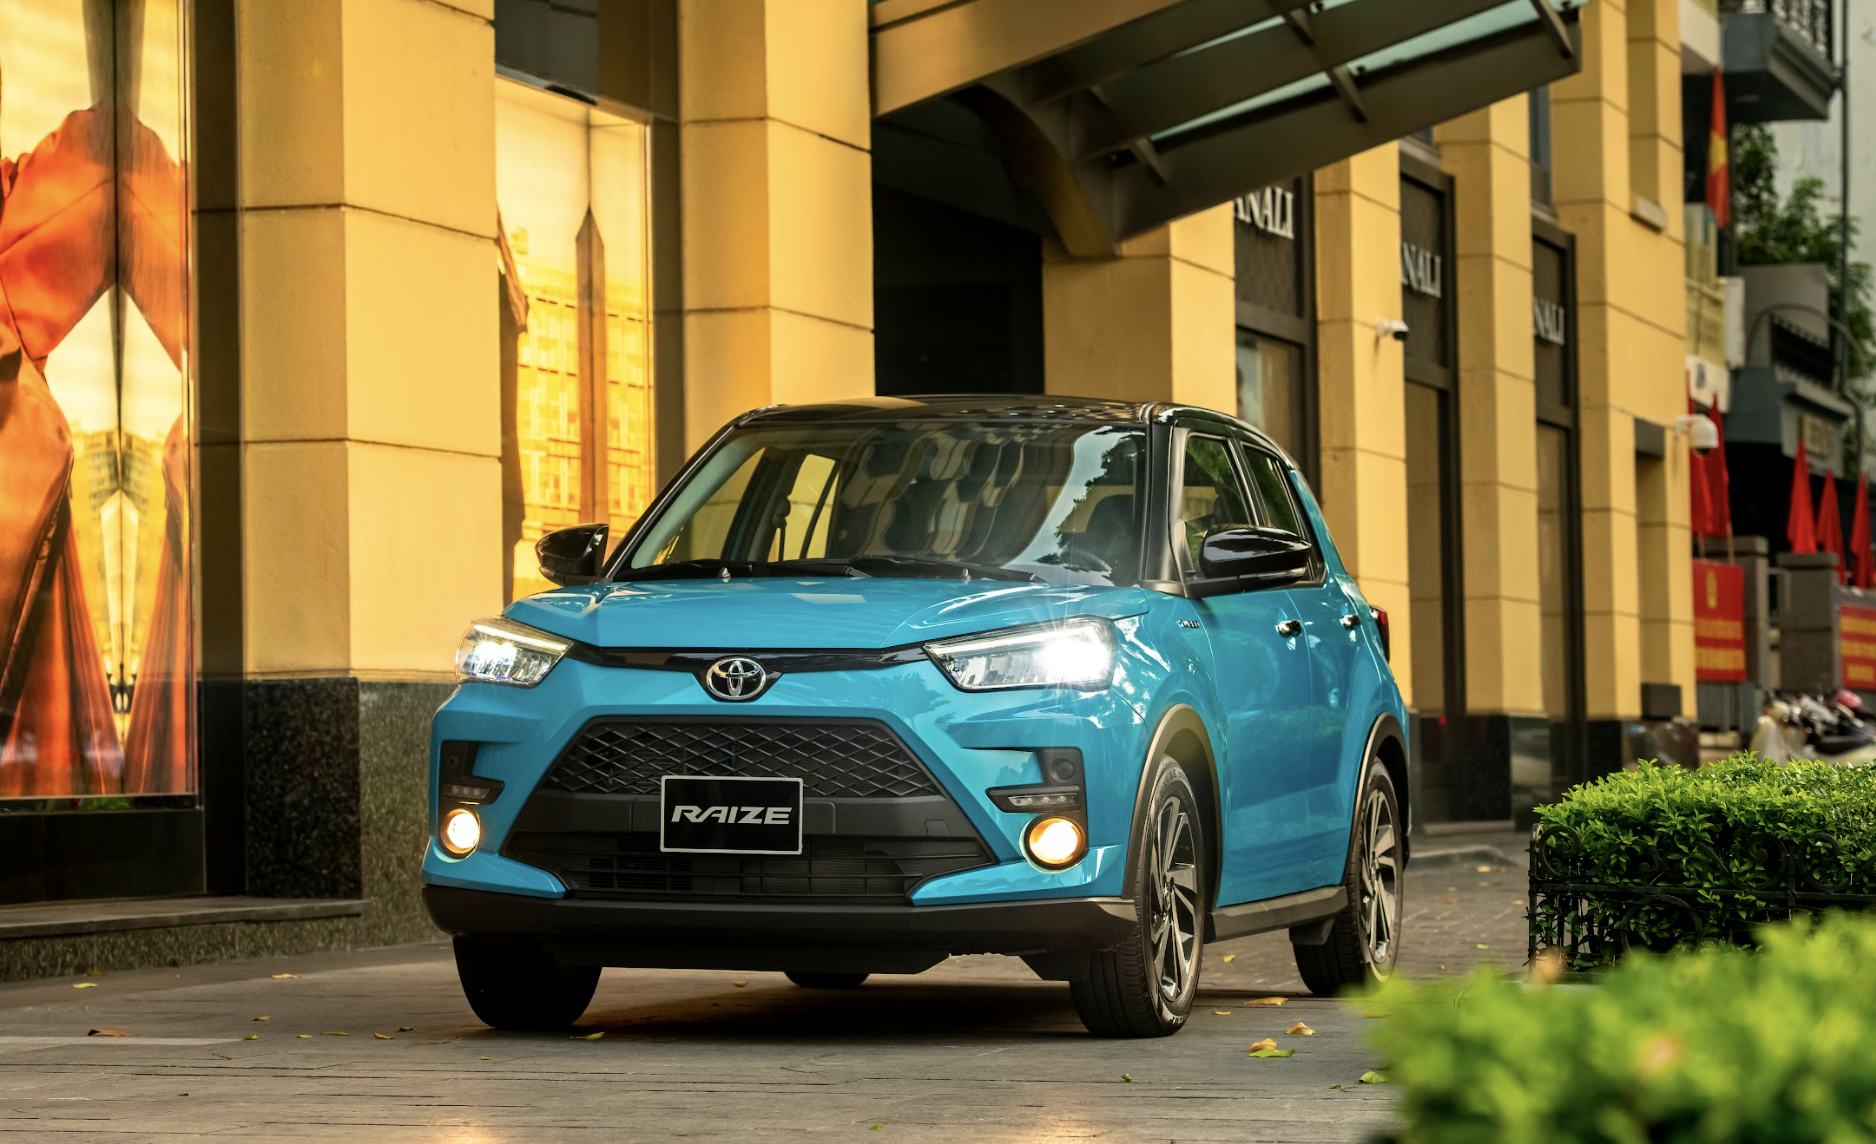 Toyota Việt Nam triệu hồi Toyota Raize vì nguy cơ sập gầm